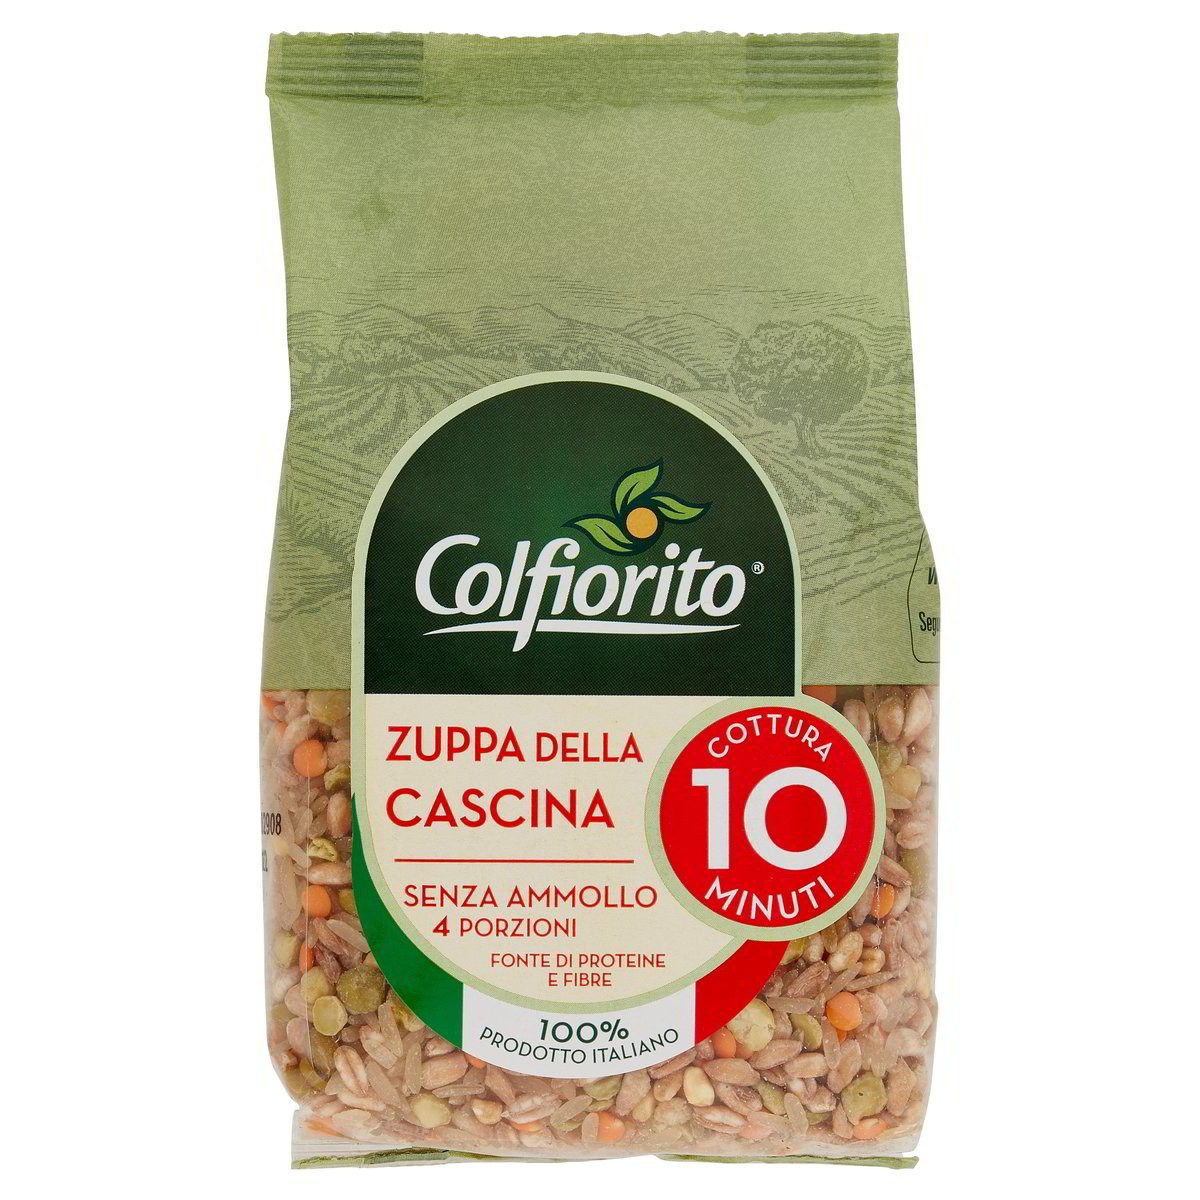 Colfiorito Zuppa Della Cascina